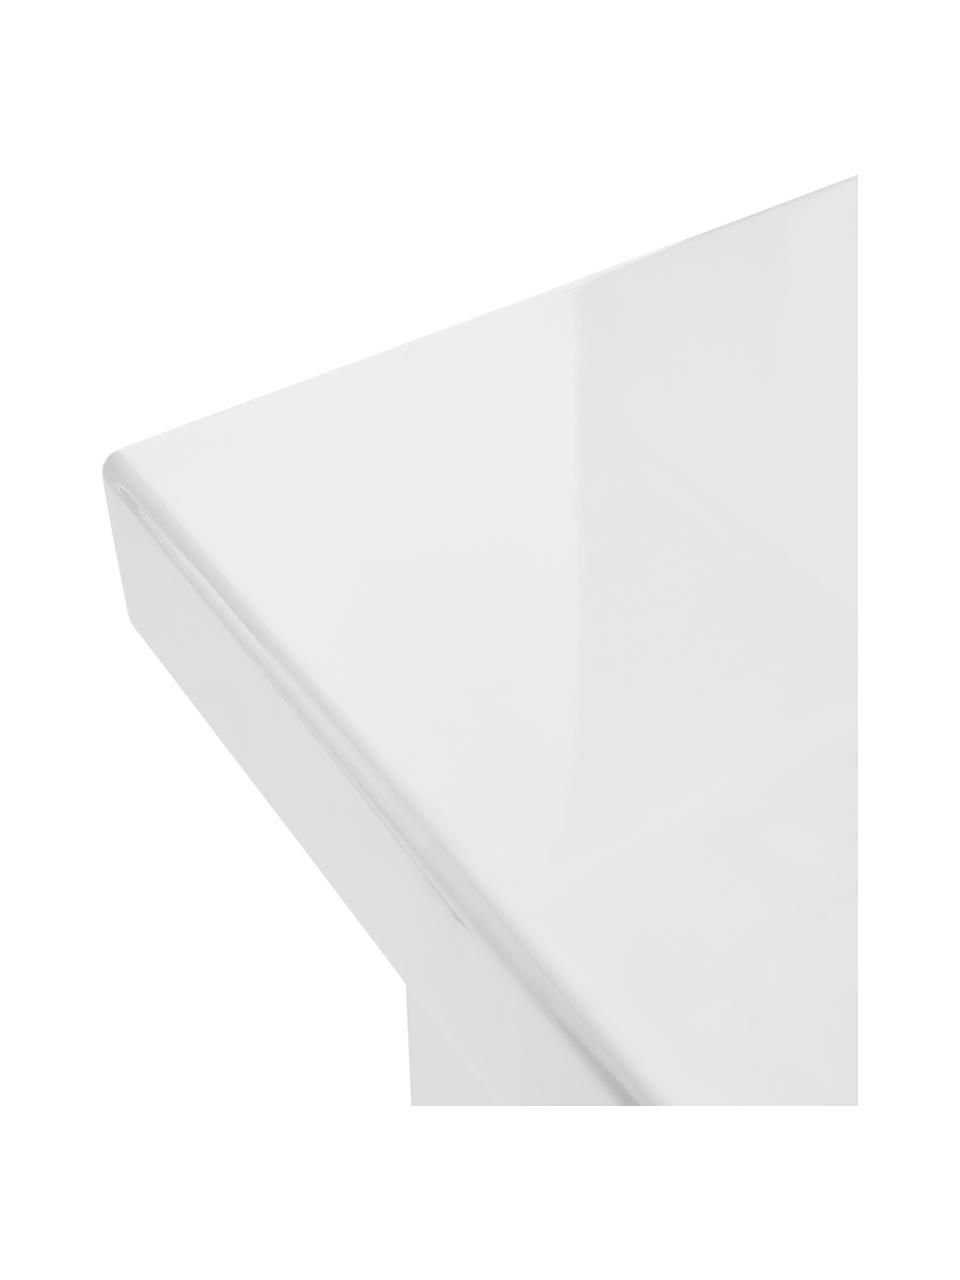 Beistelltisch Crozz, Mitteldichte Holzfaserplatte (MDF), lackiert, Weiß, B 40 x H 58 cm